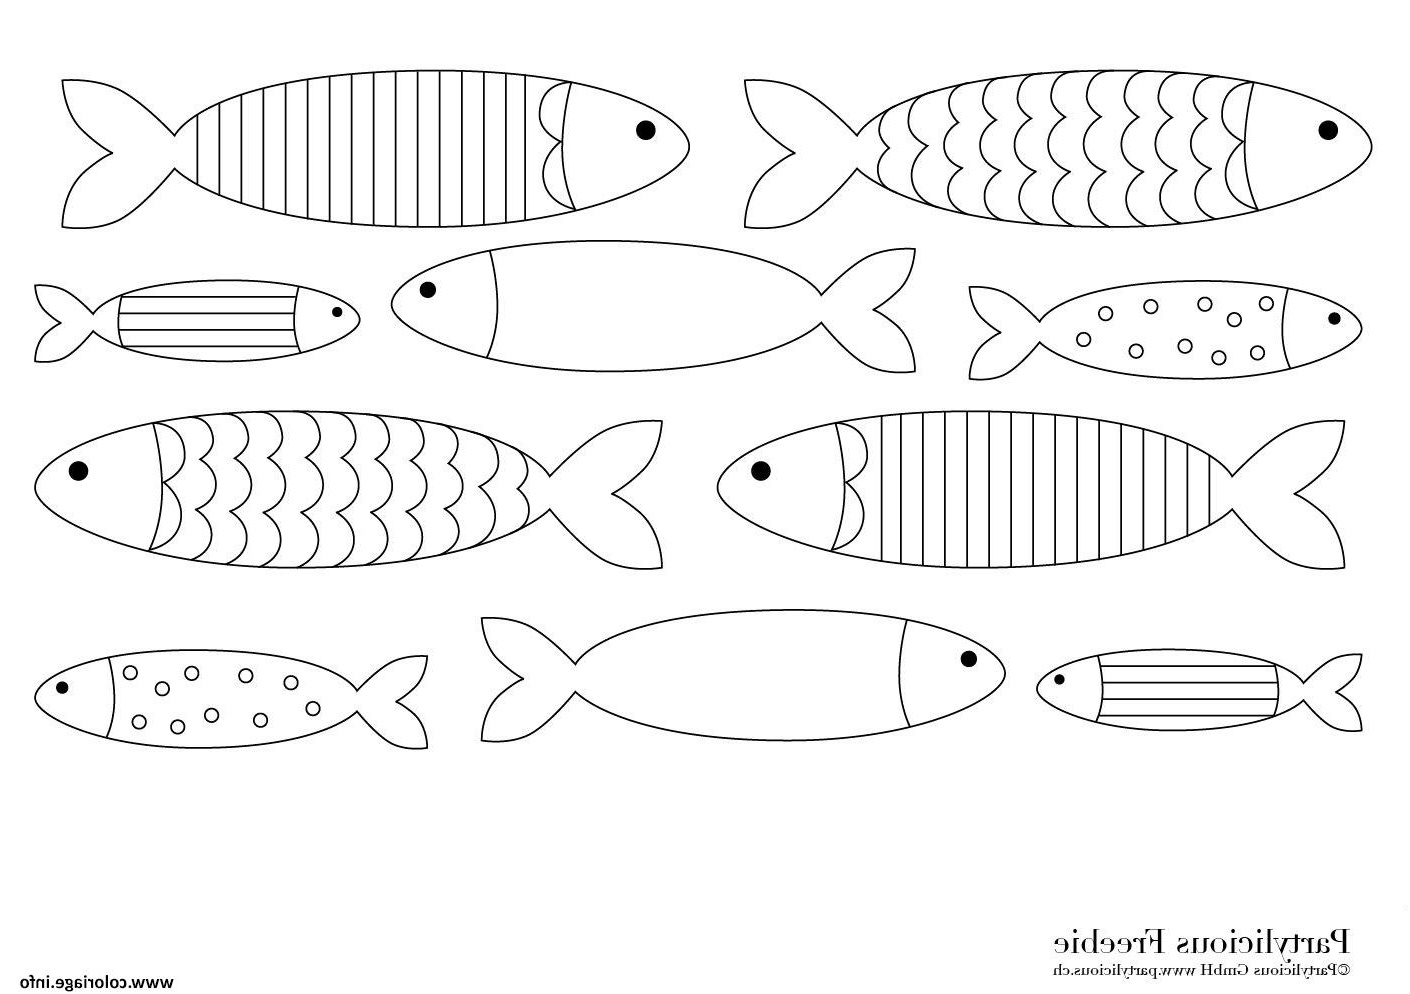 poisson avril par partystudio coloriage dessin